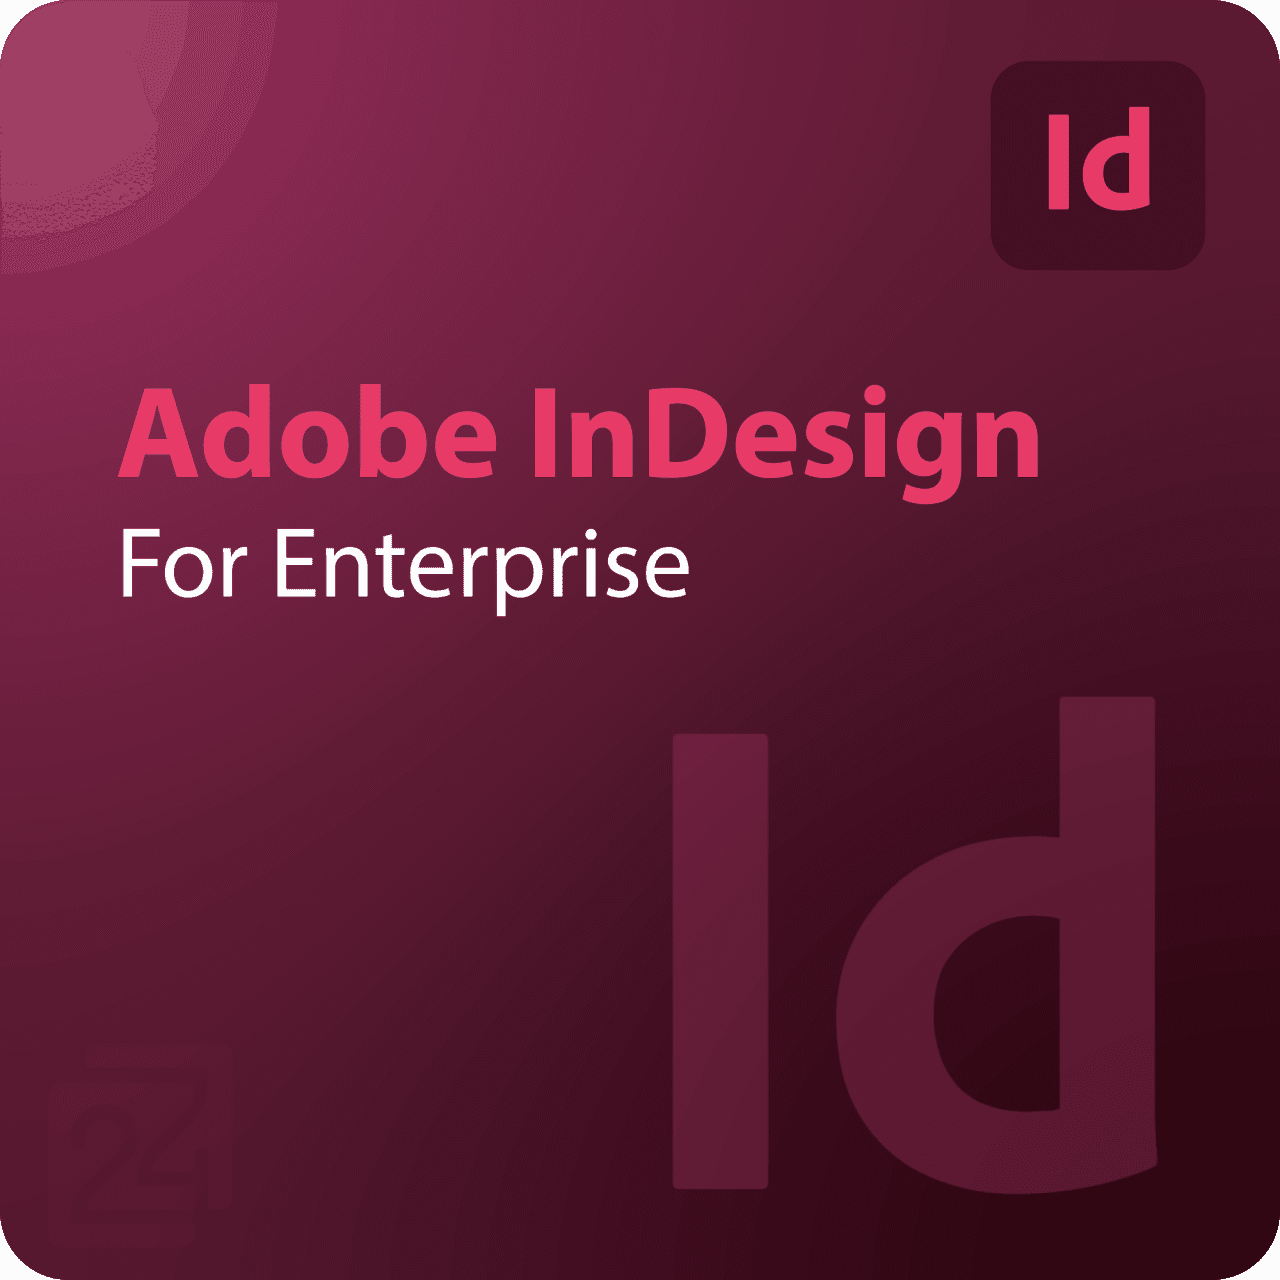 Adobe InDesign for Enterprise